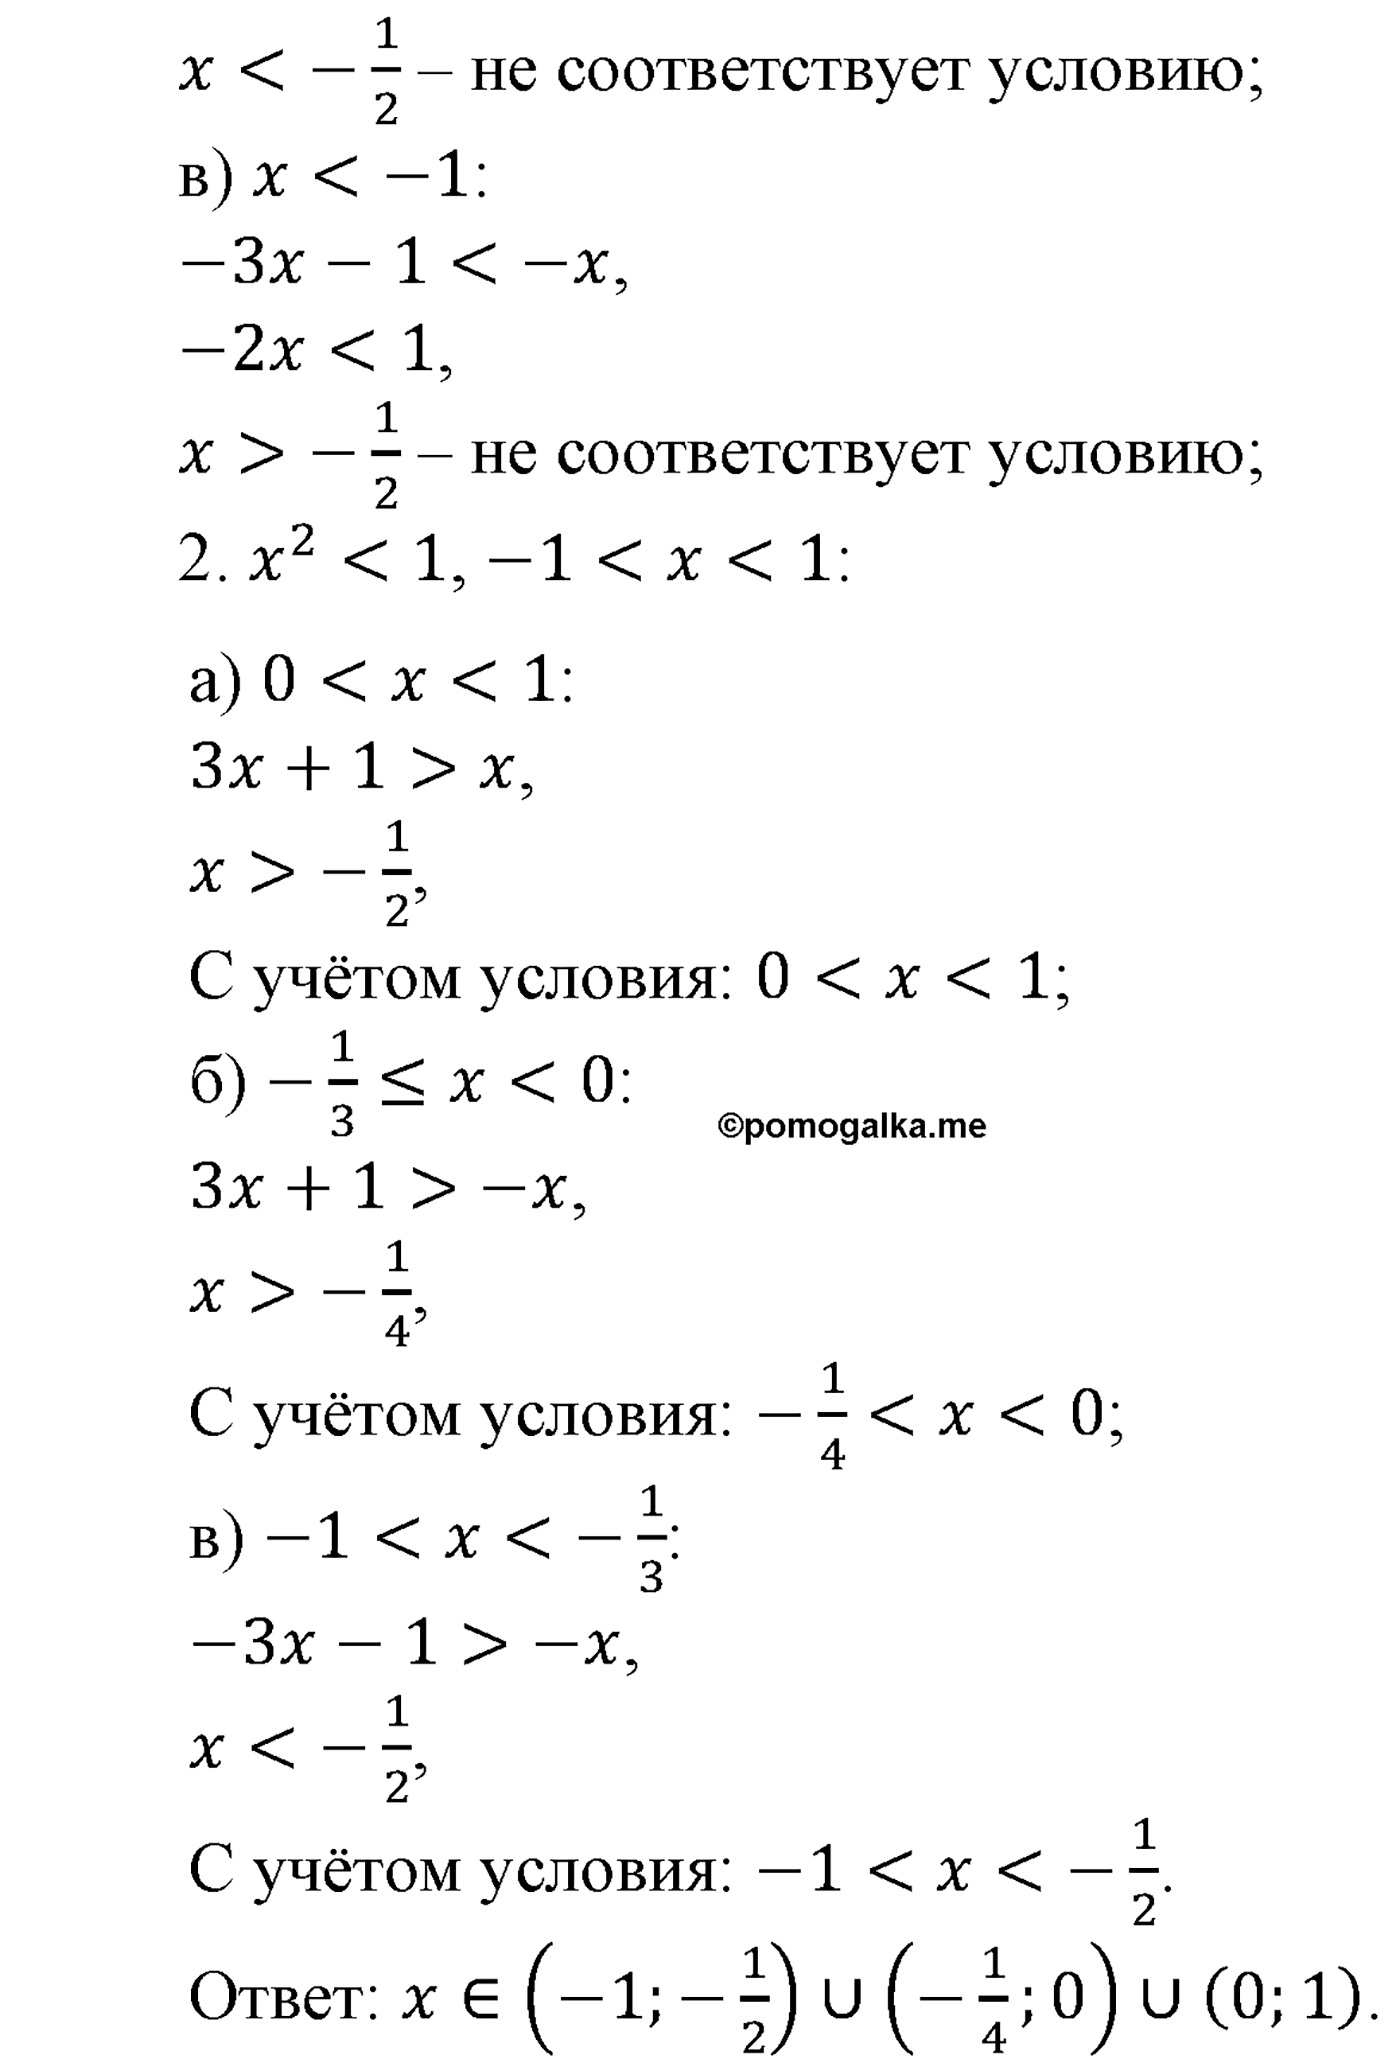 разбор задачи №1614 по алгебре за 10-11 класс из учебника Алимова, Колягина